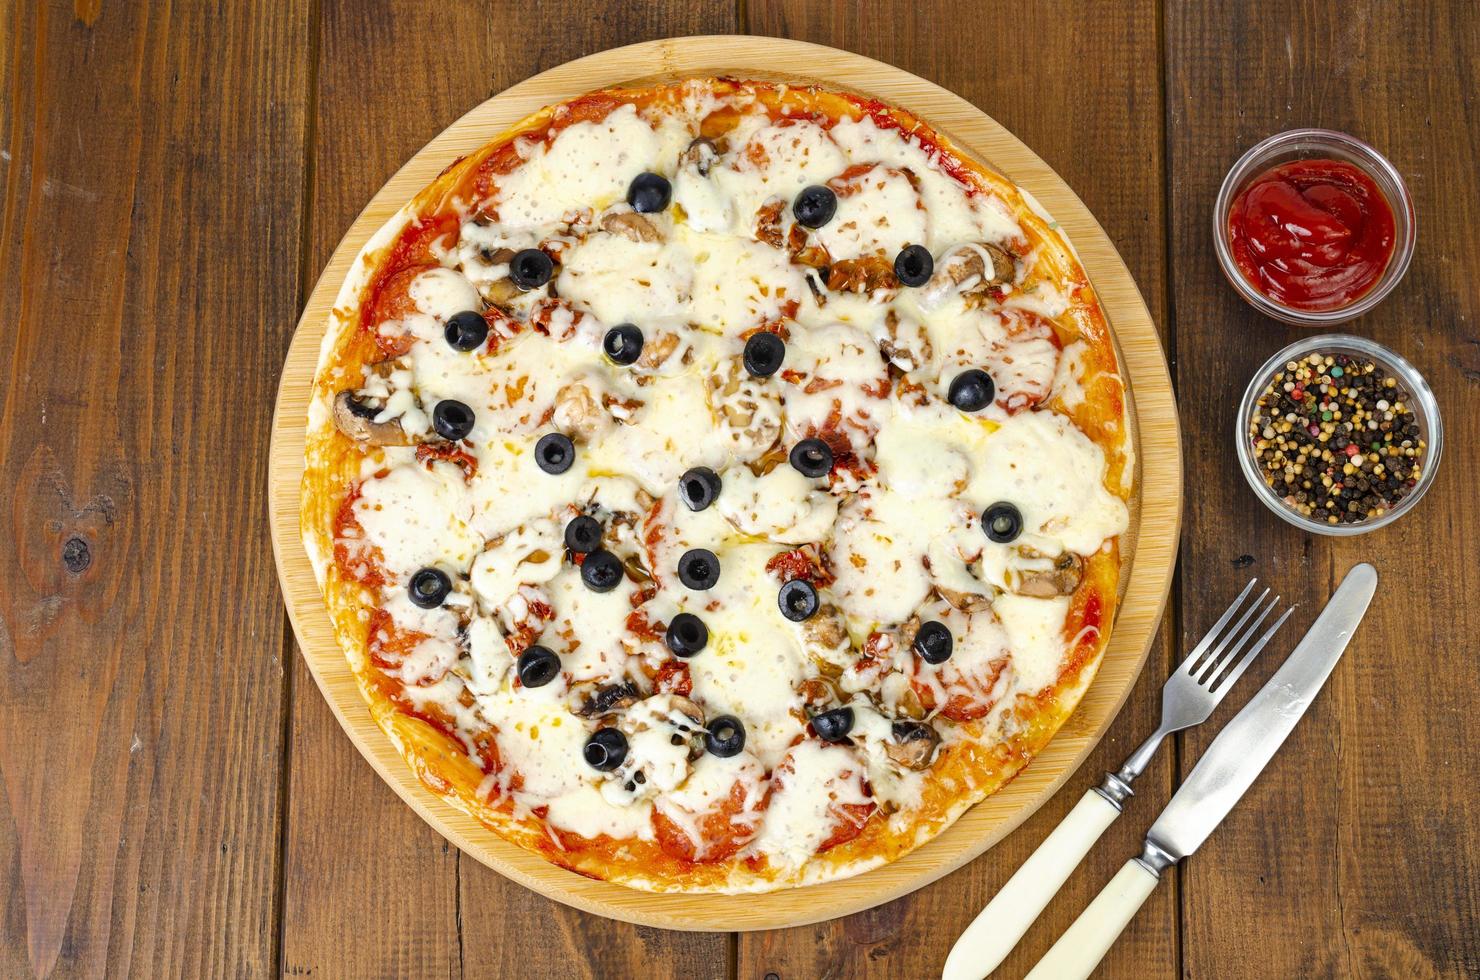 huisgemaakte pizza met pepperoni, champignons, mozzarella en olijven. studio foto